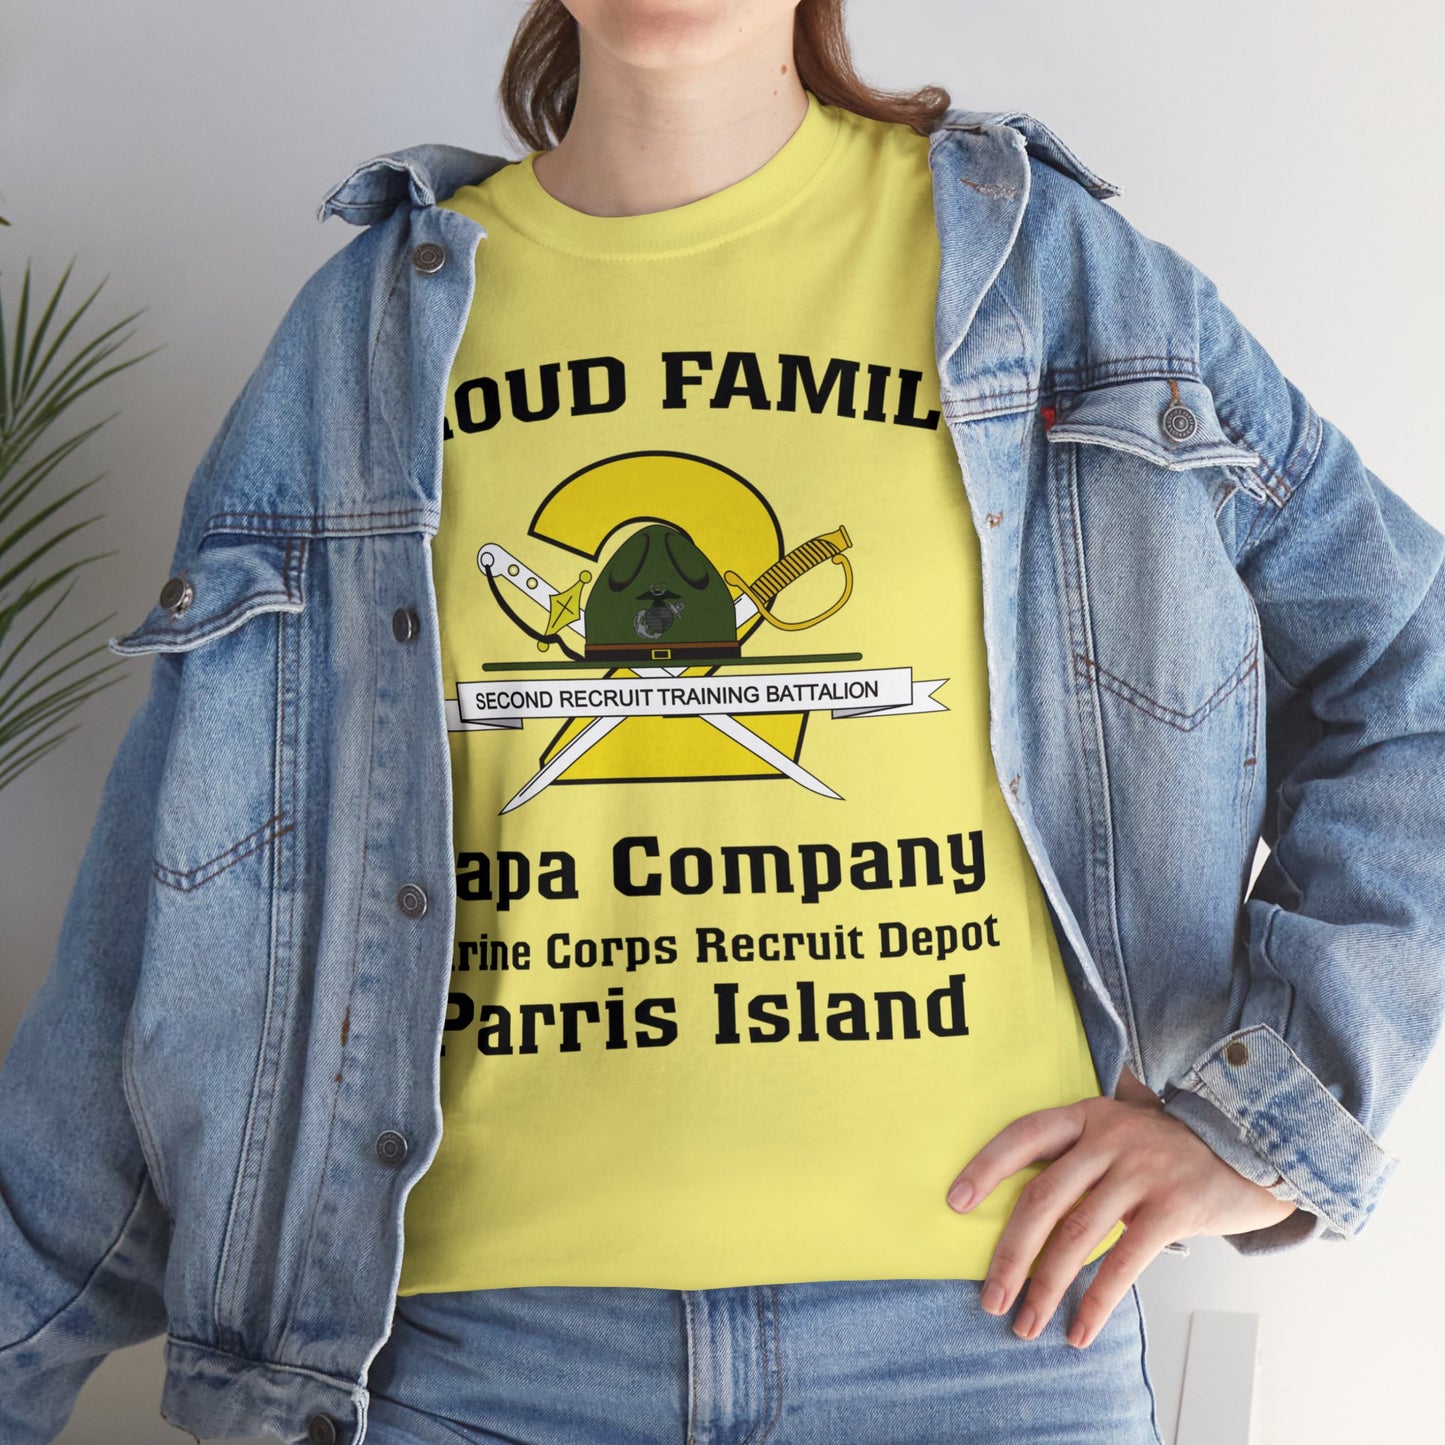 T-Shirt: Papa Co. MCRD Parris Island (2nd Battalion Crest)